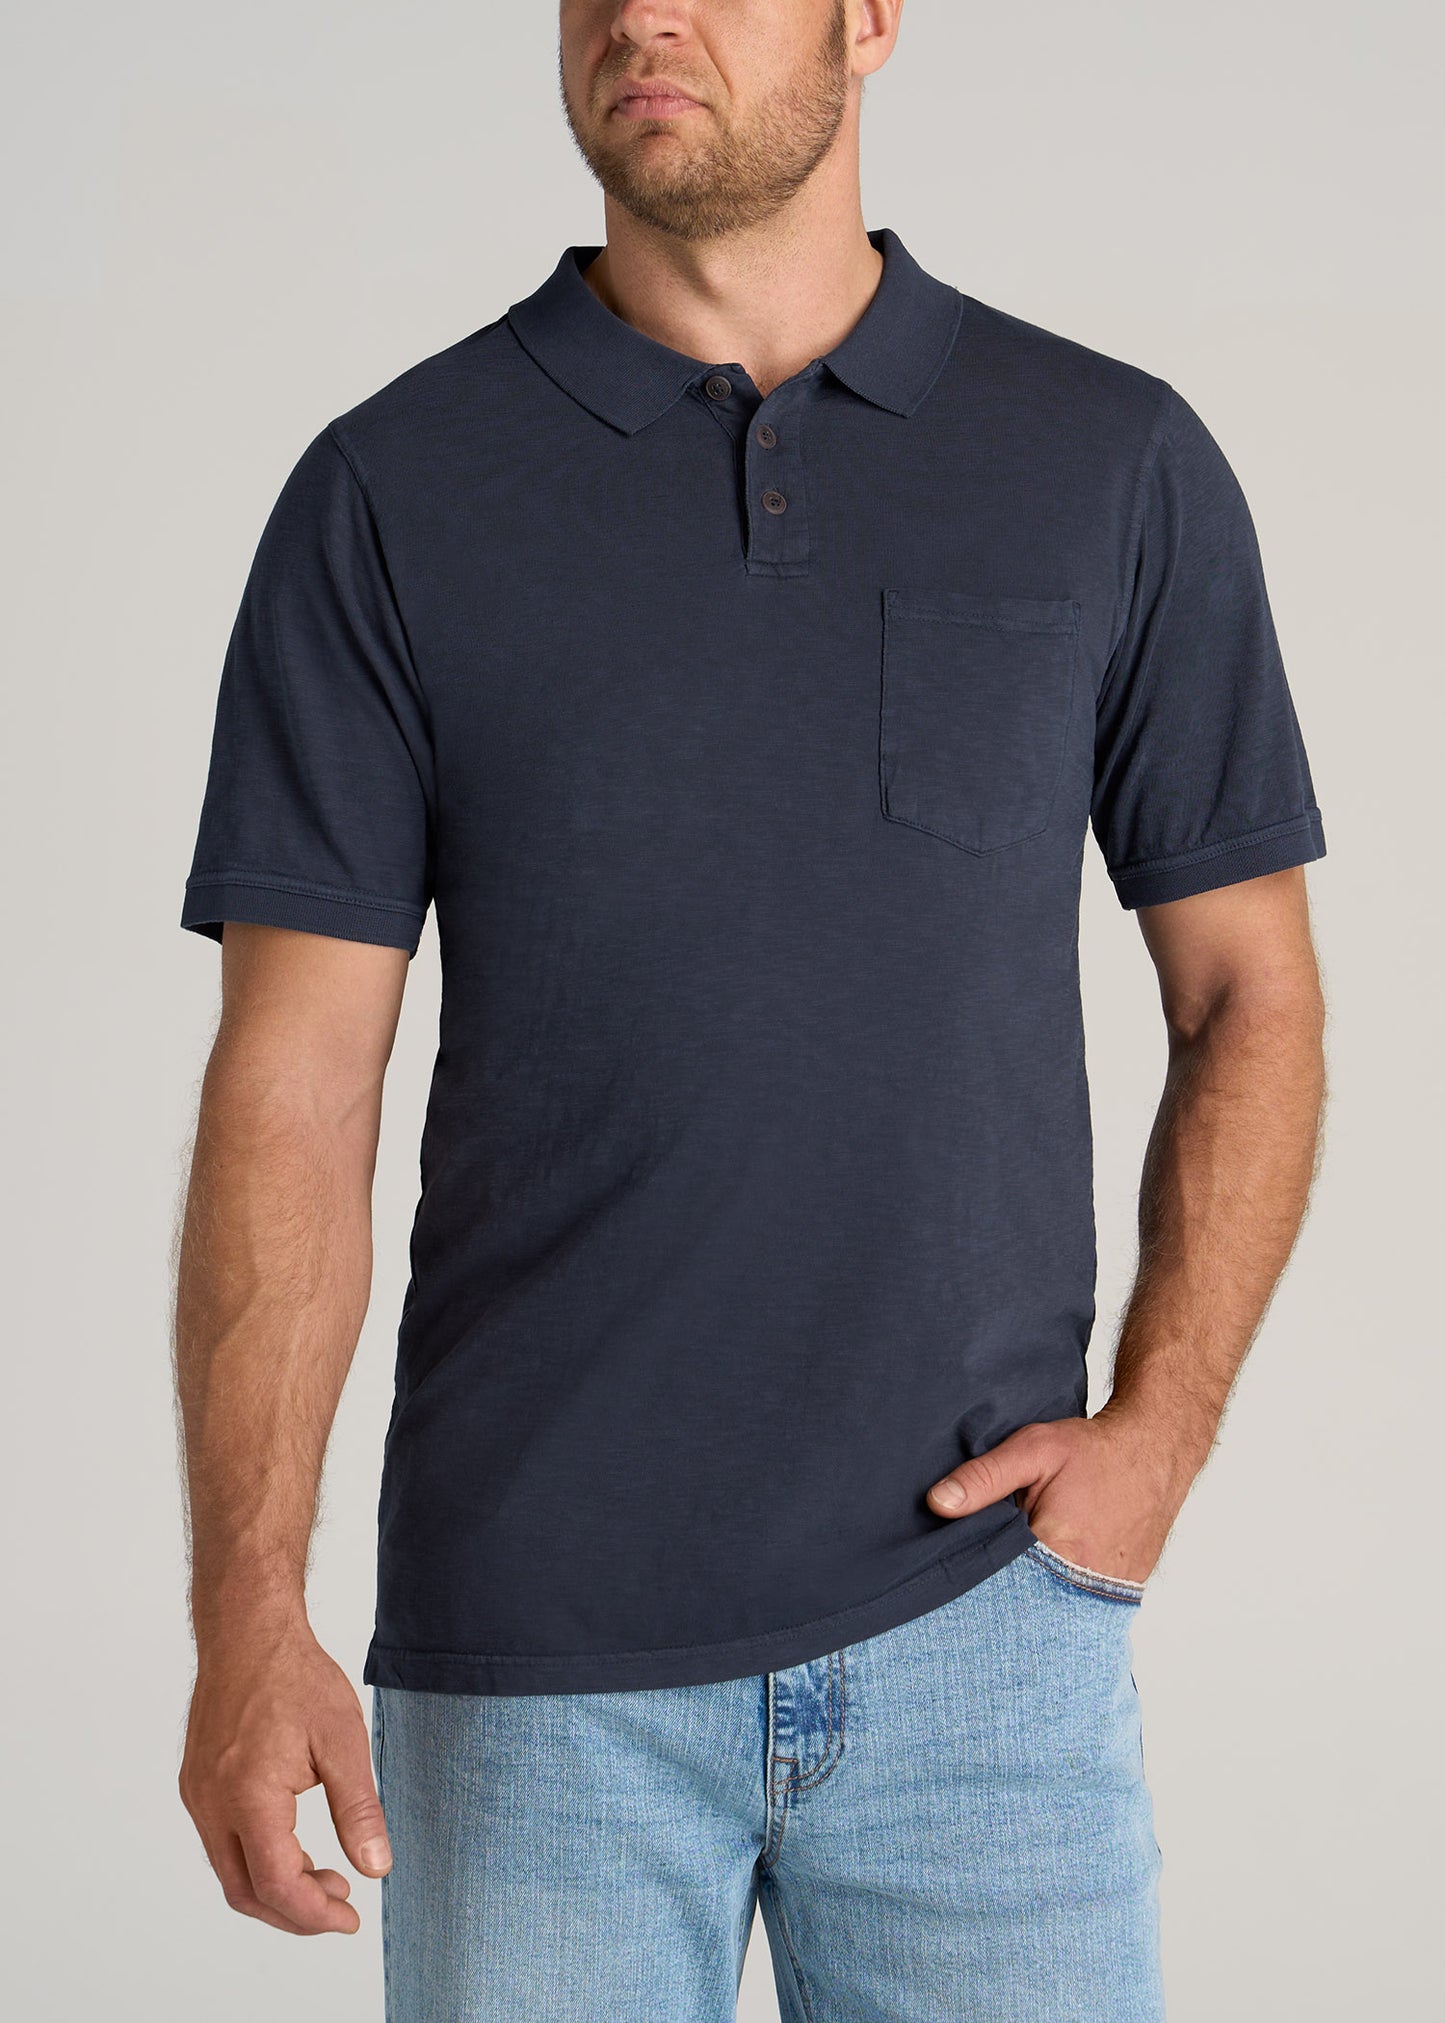     American-Tall-Men-LJ-Slub-Pocket-Polo-Shirt-Vintage-Midnight-Navy-front